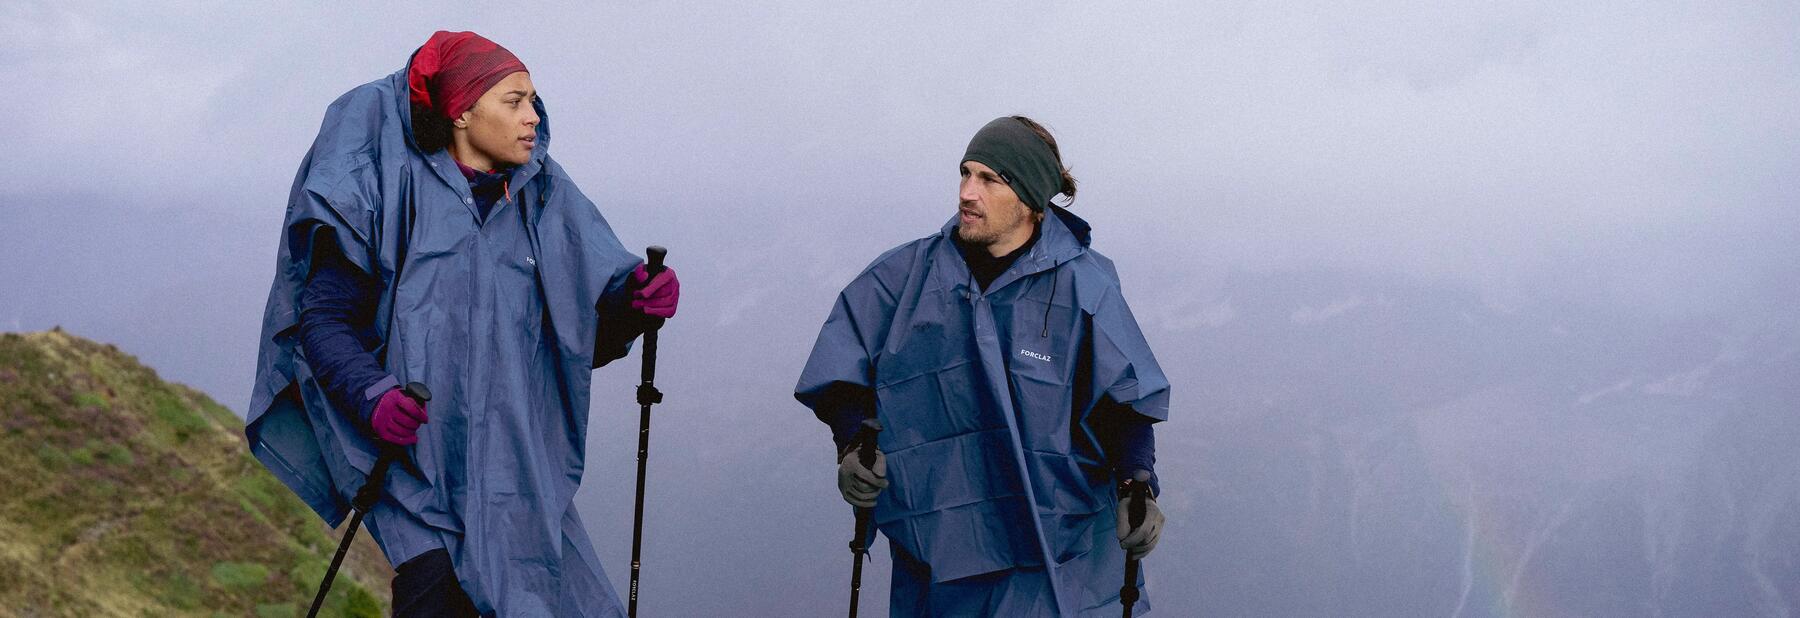 A couple hiking in wet weather wearing waterproof jackets